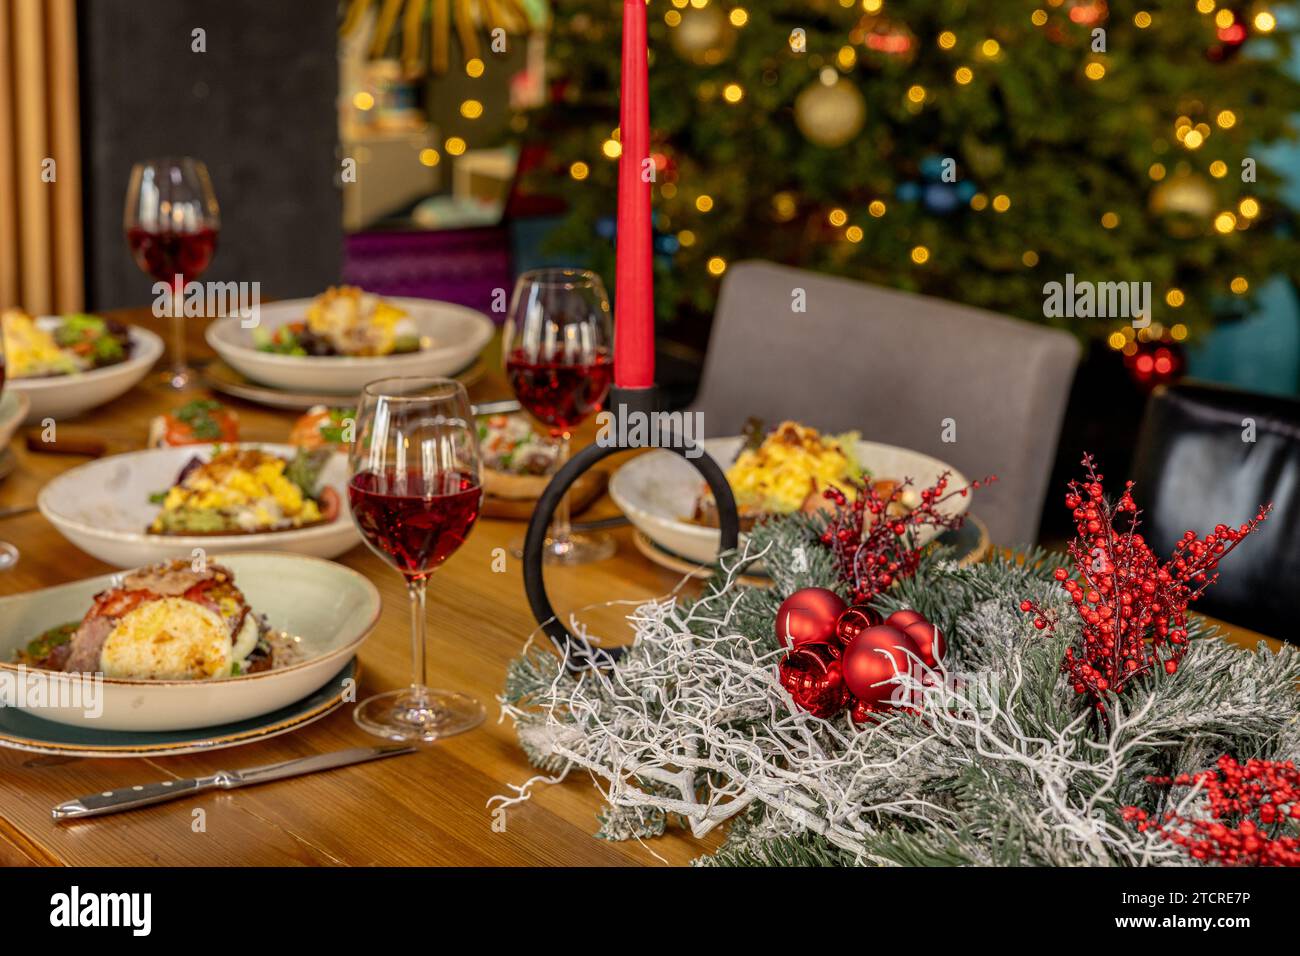 Table de Noël servie avec différents plats Banque D'Images